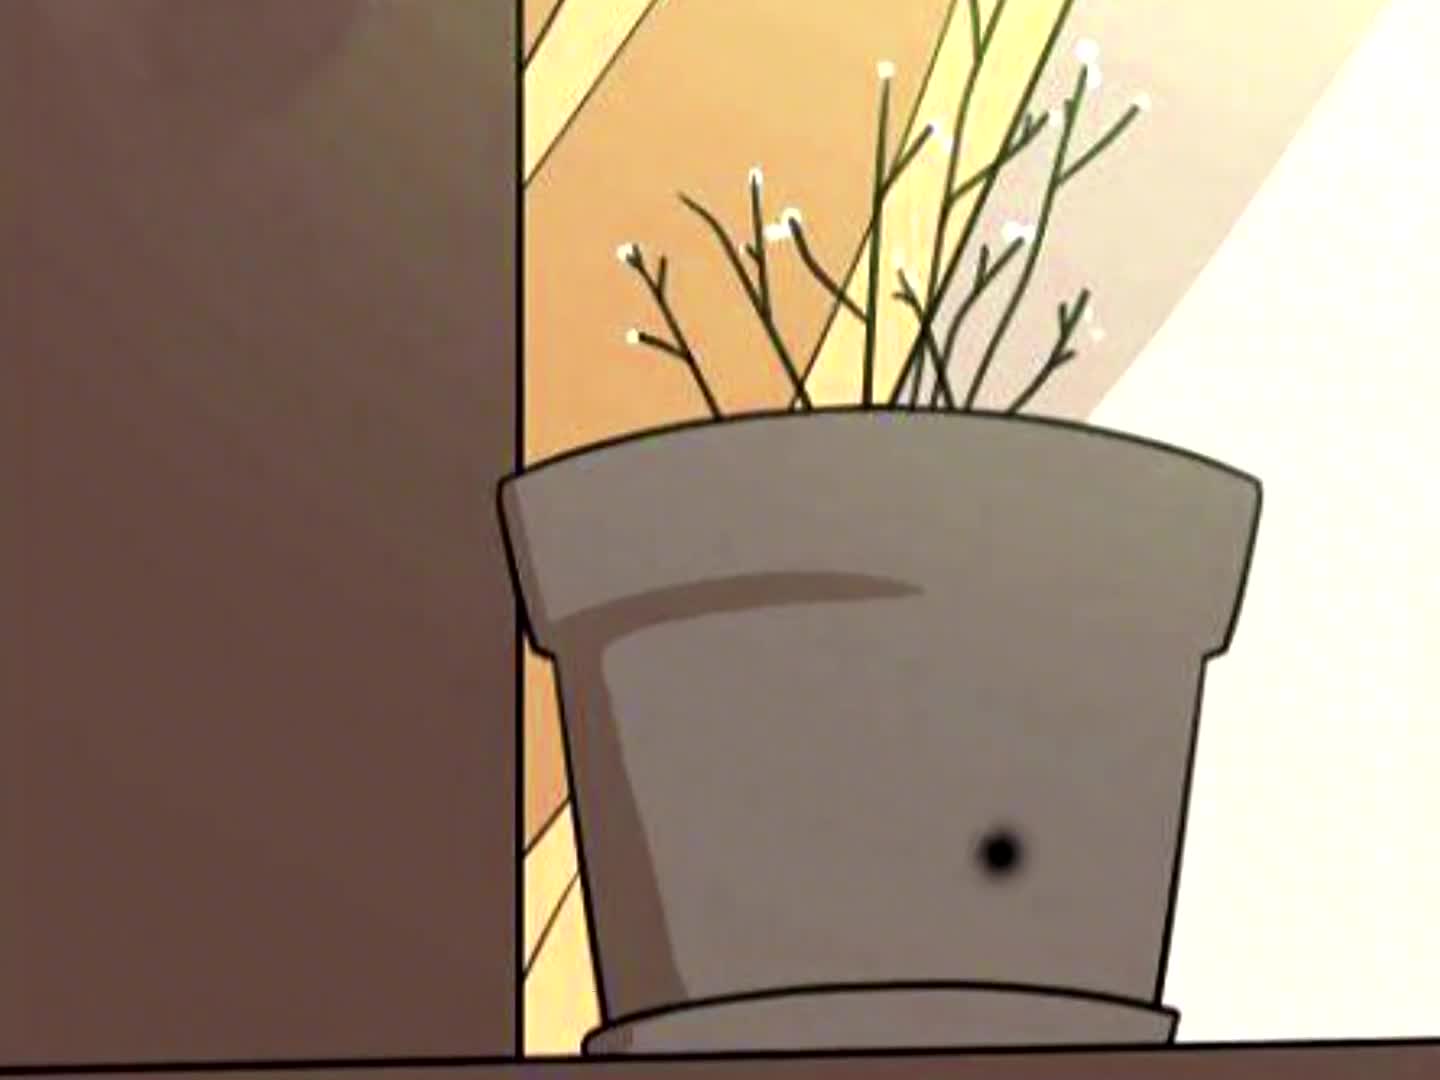 谁不喜欢一个会生长触手的植物呢——《灿烂的妄想》 - 刺鸟网